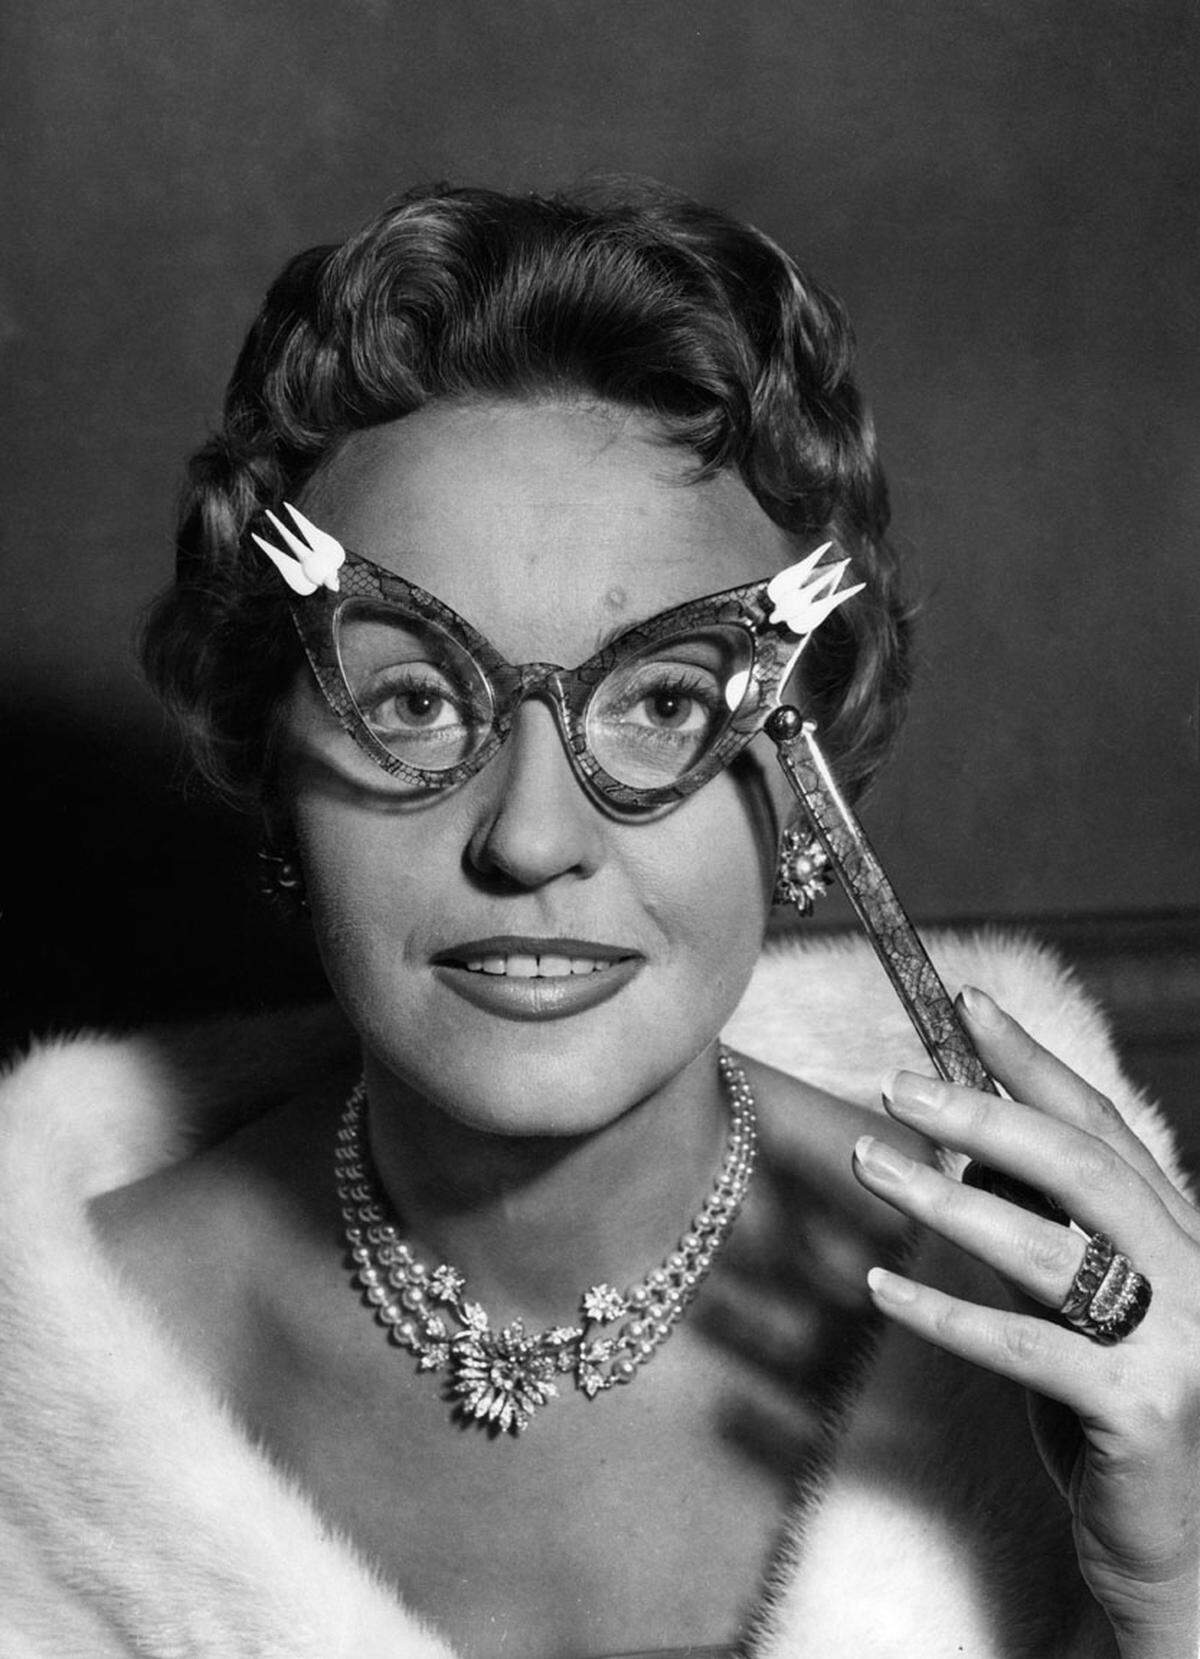 In den kriegerischen 50er Jahren war jeder schräge Brillenentwurf willkommen. Cateye Brillen wurden allerdings gern von Bibliothekarinnen und Sekretärinnen getragen, die zum emanzipierten, arbeitenden Teil der weiblichen Bevölkerung zählten.